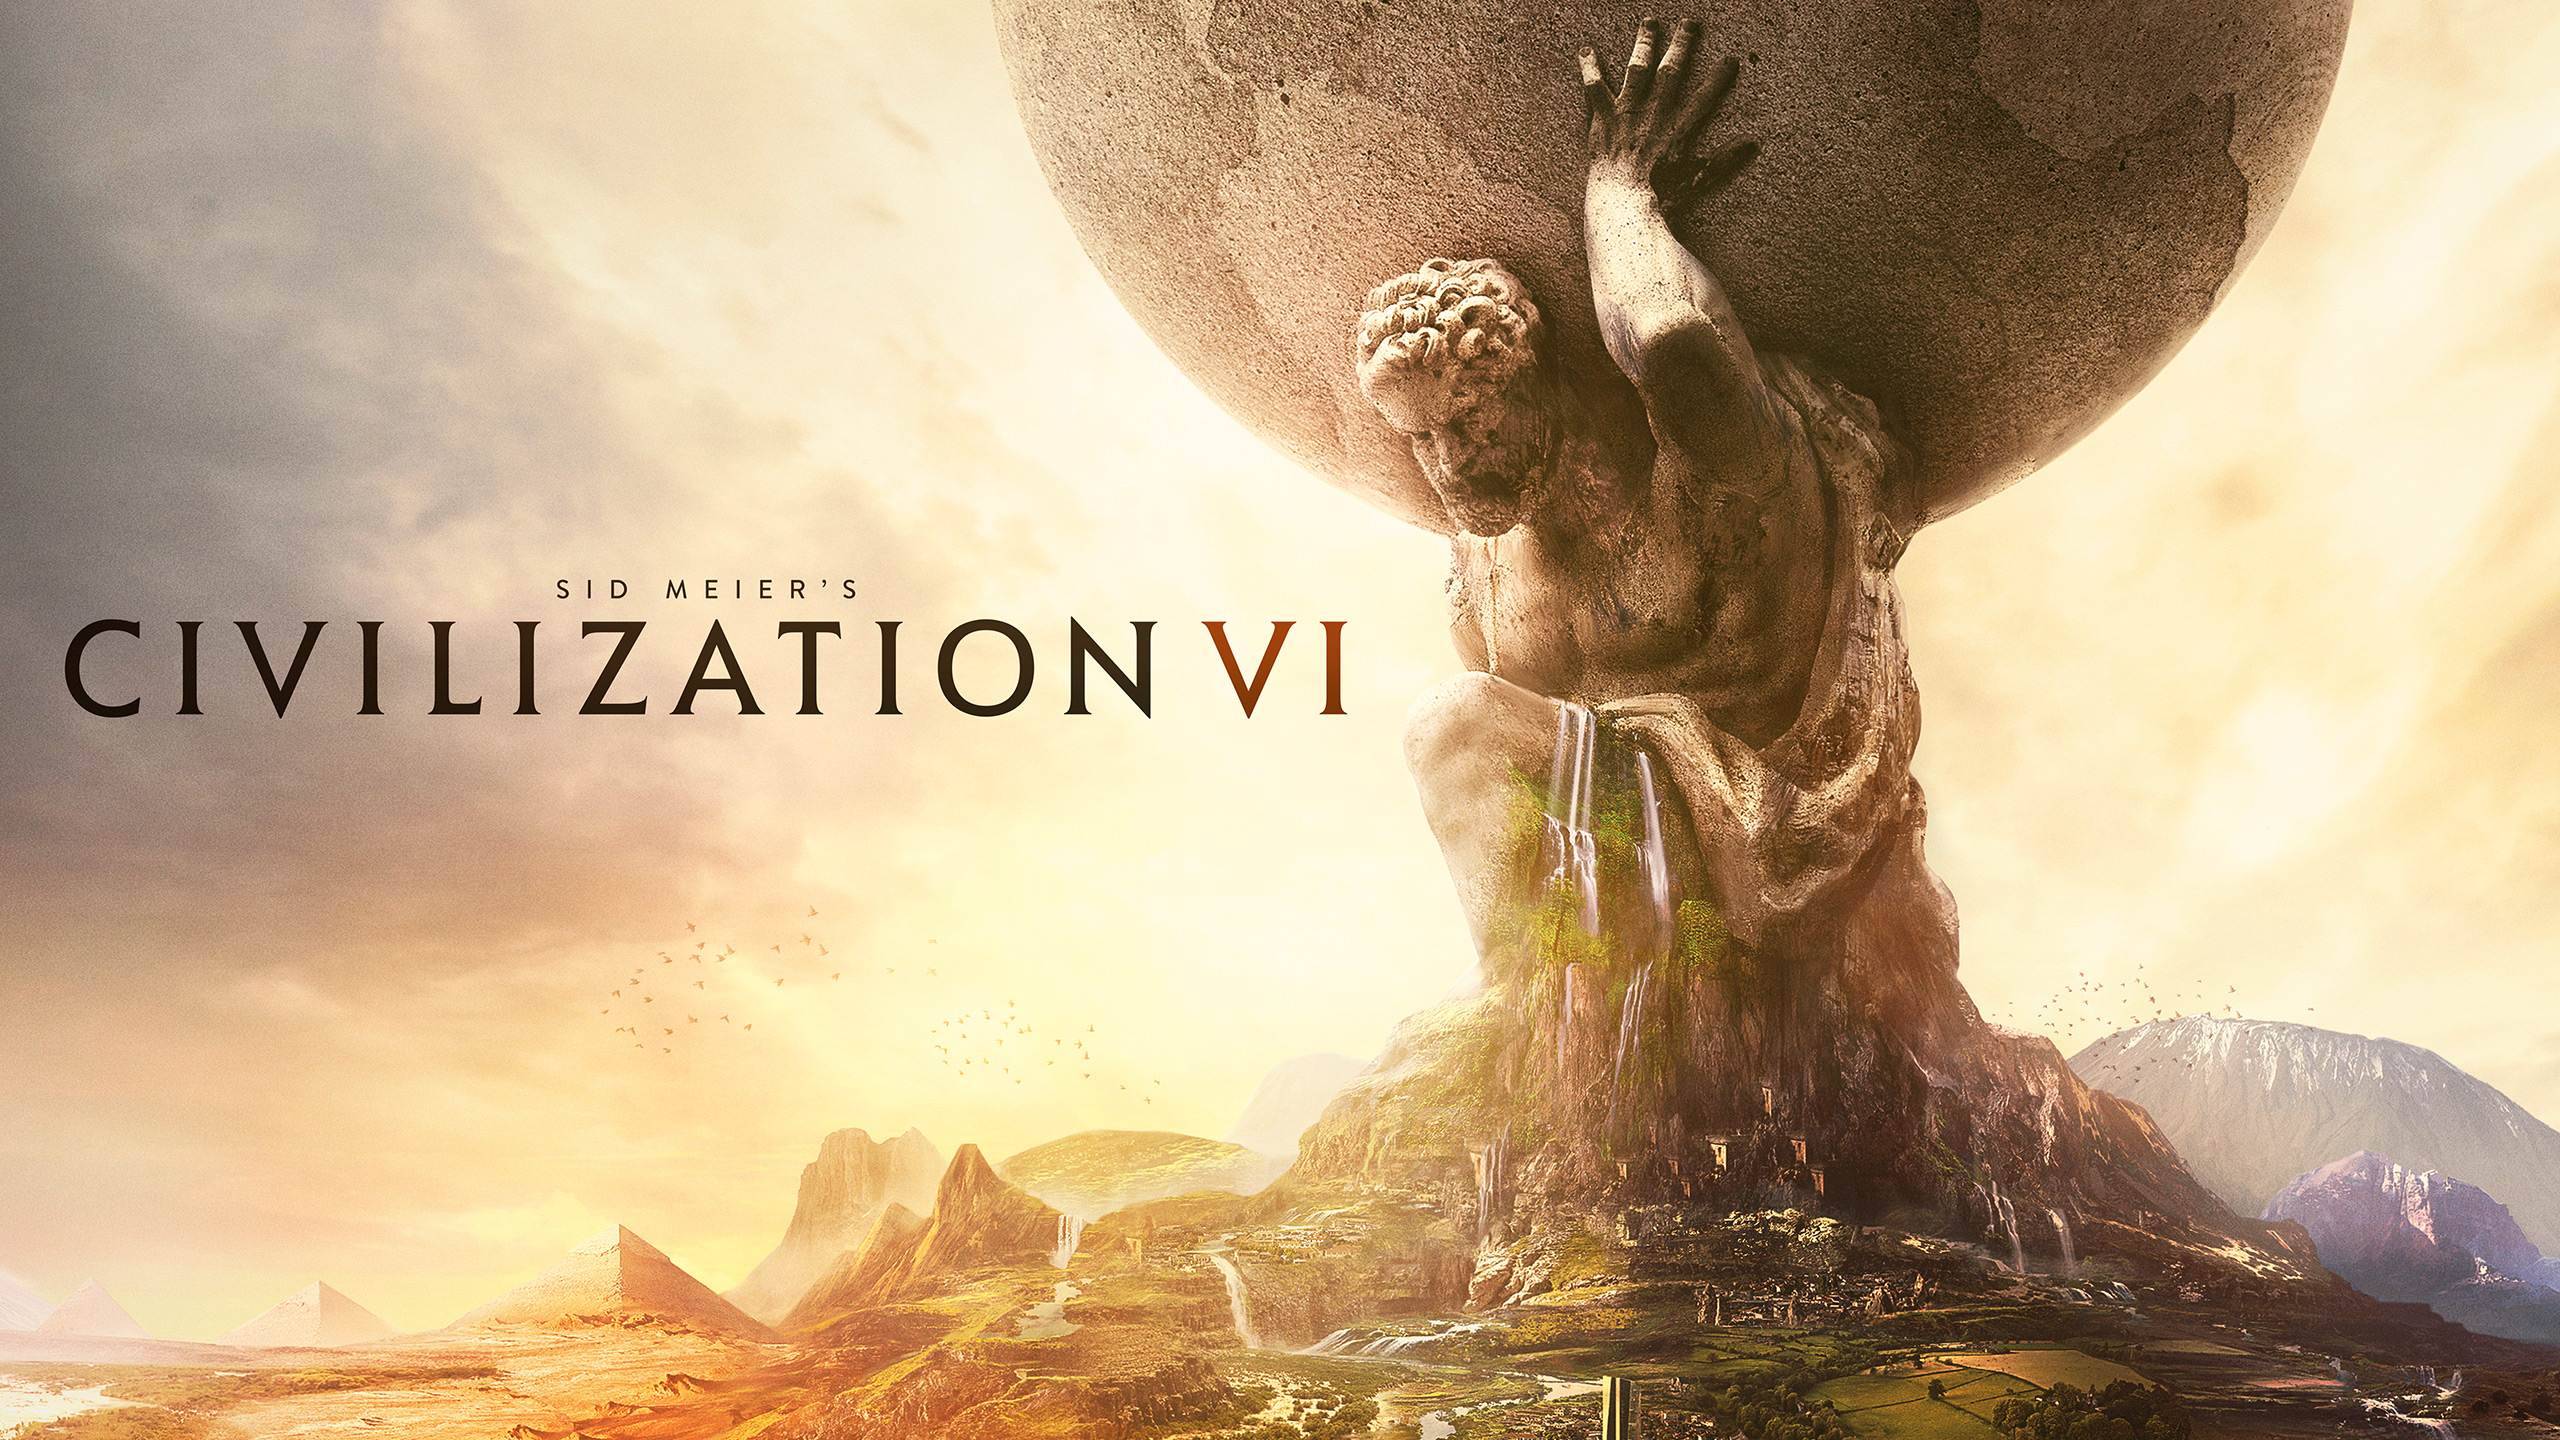 Sid Meier’s Civilization VI ★ Рандом ★ Пробуем сходу завоевать ★ Часть 1